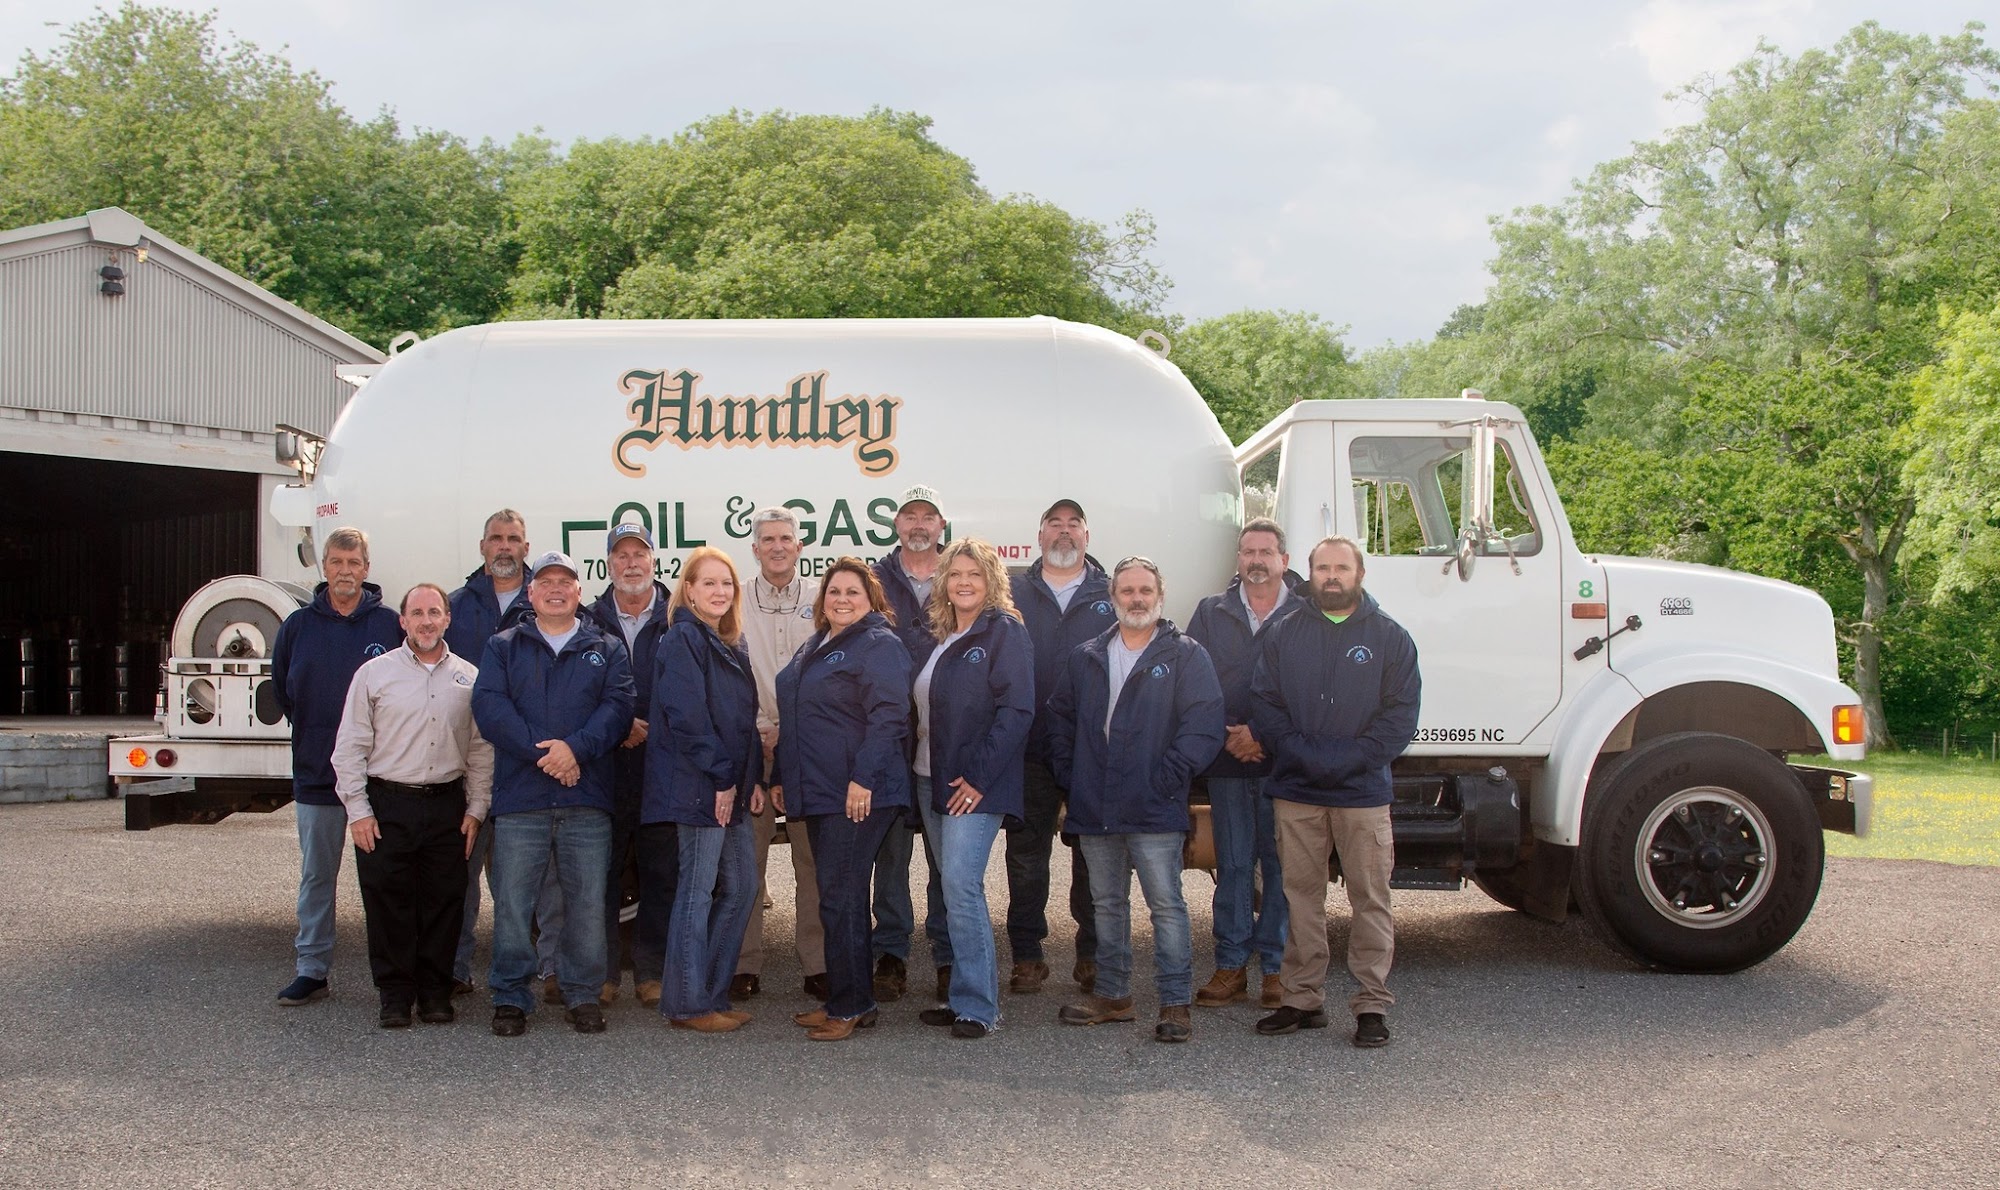 Huntley Oil & Gas Co